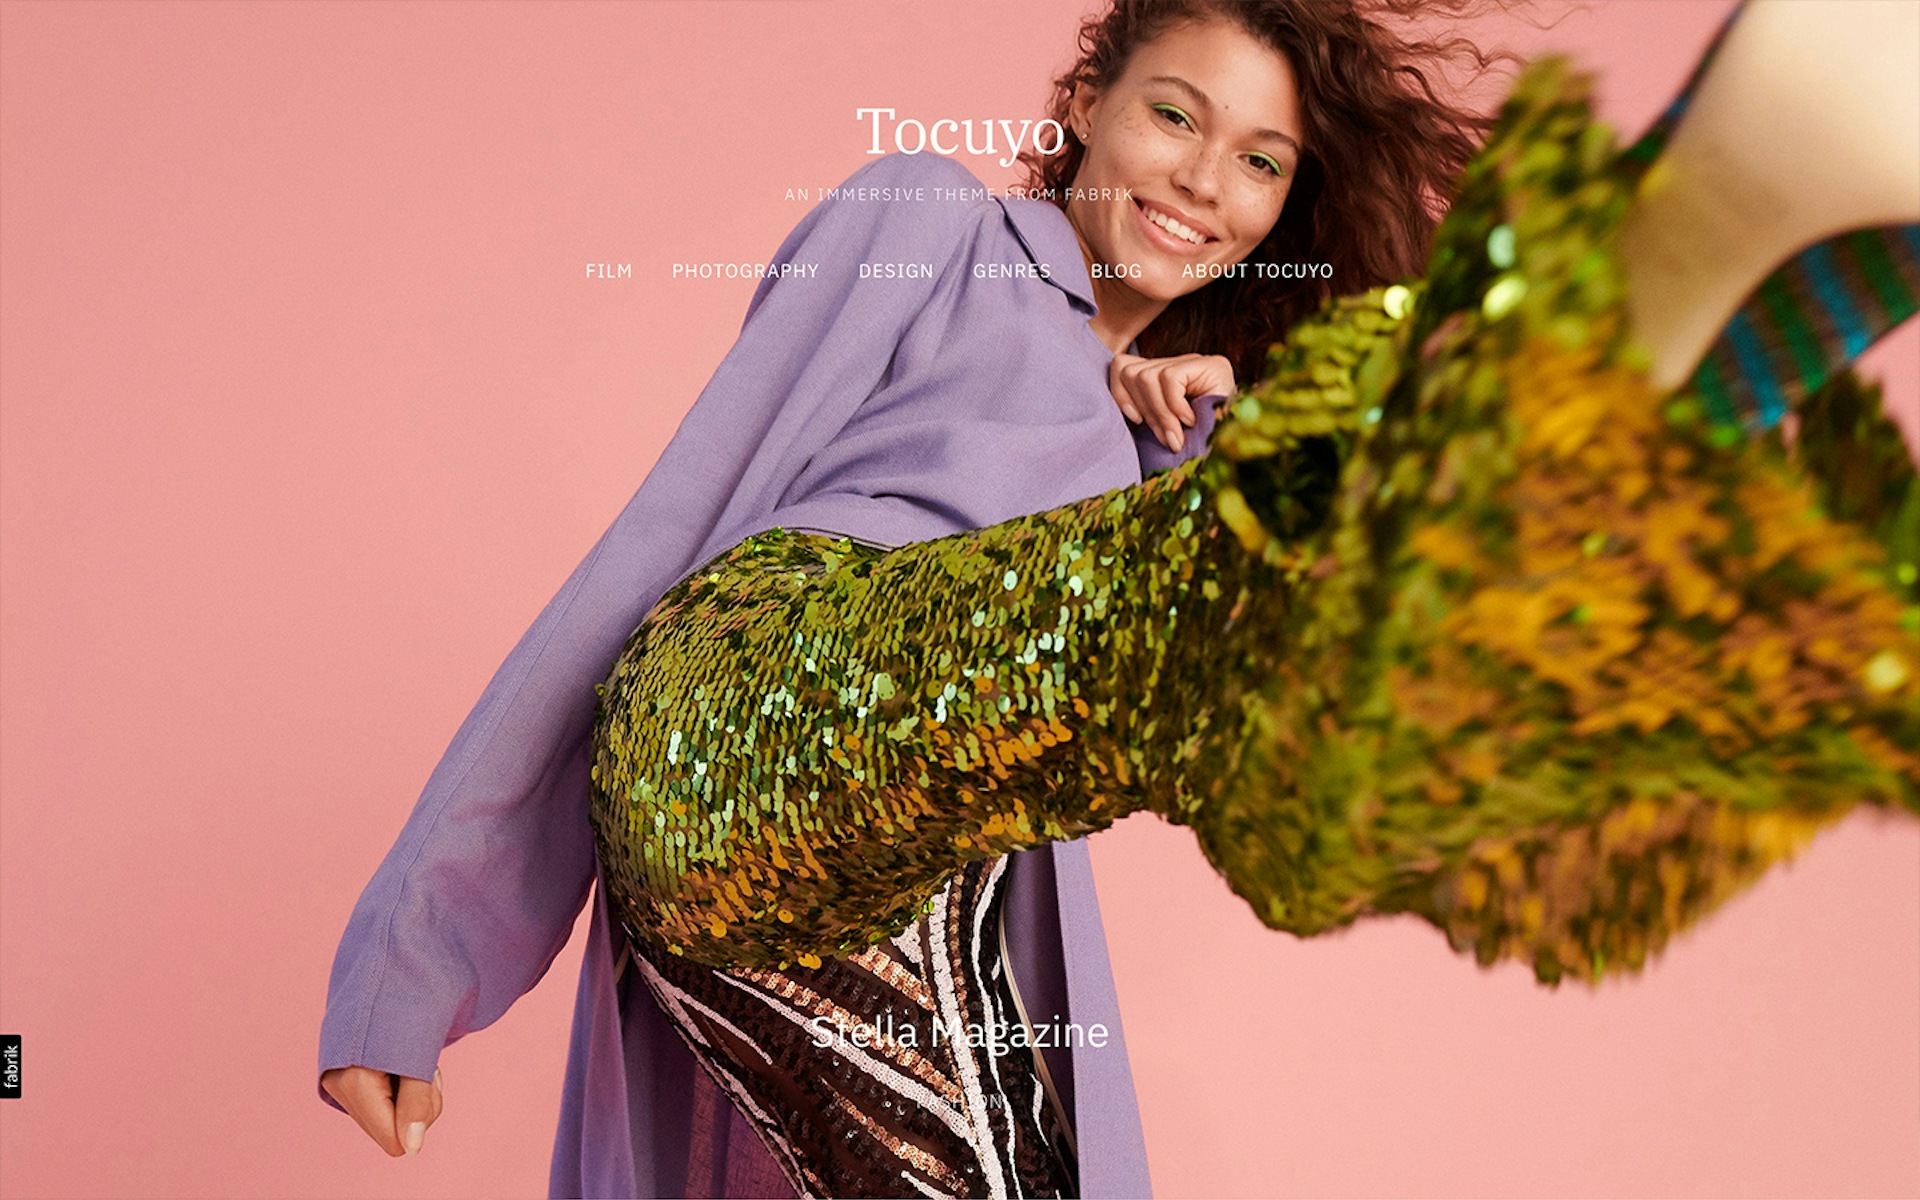 Tocuyo theme for Fabrik portfolio website